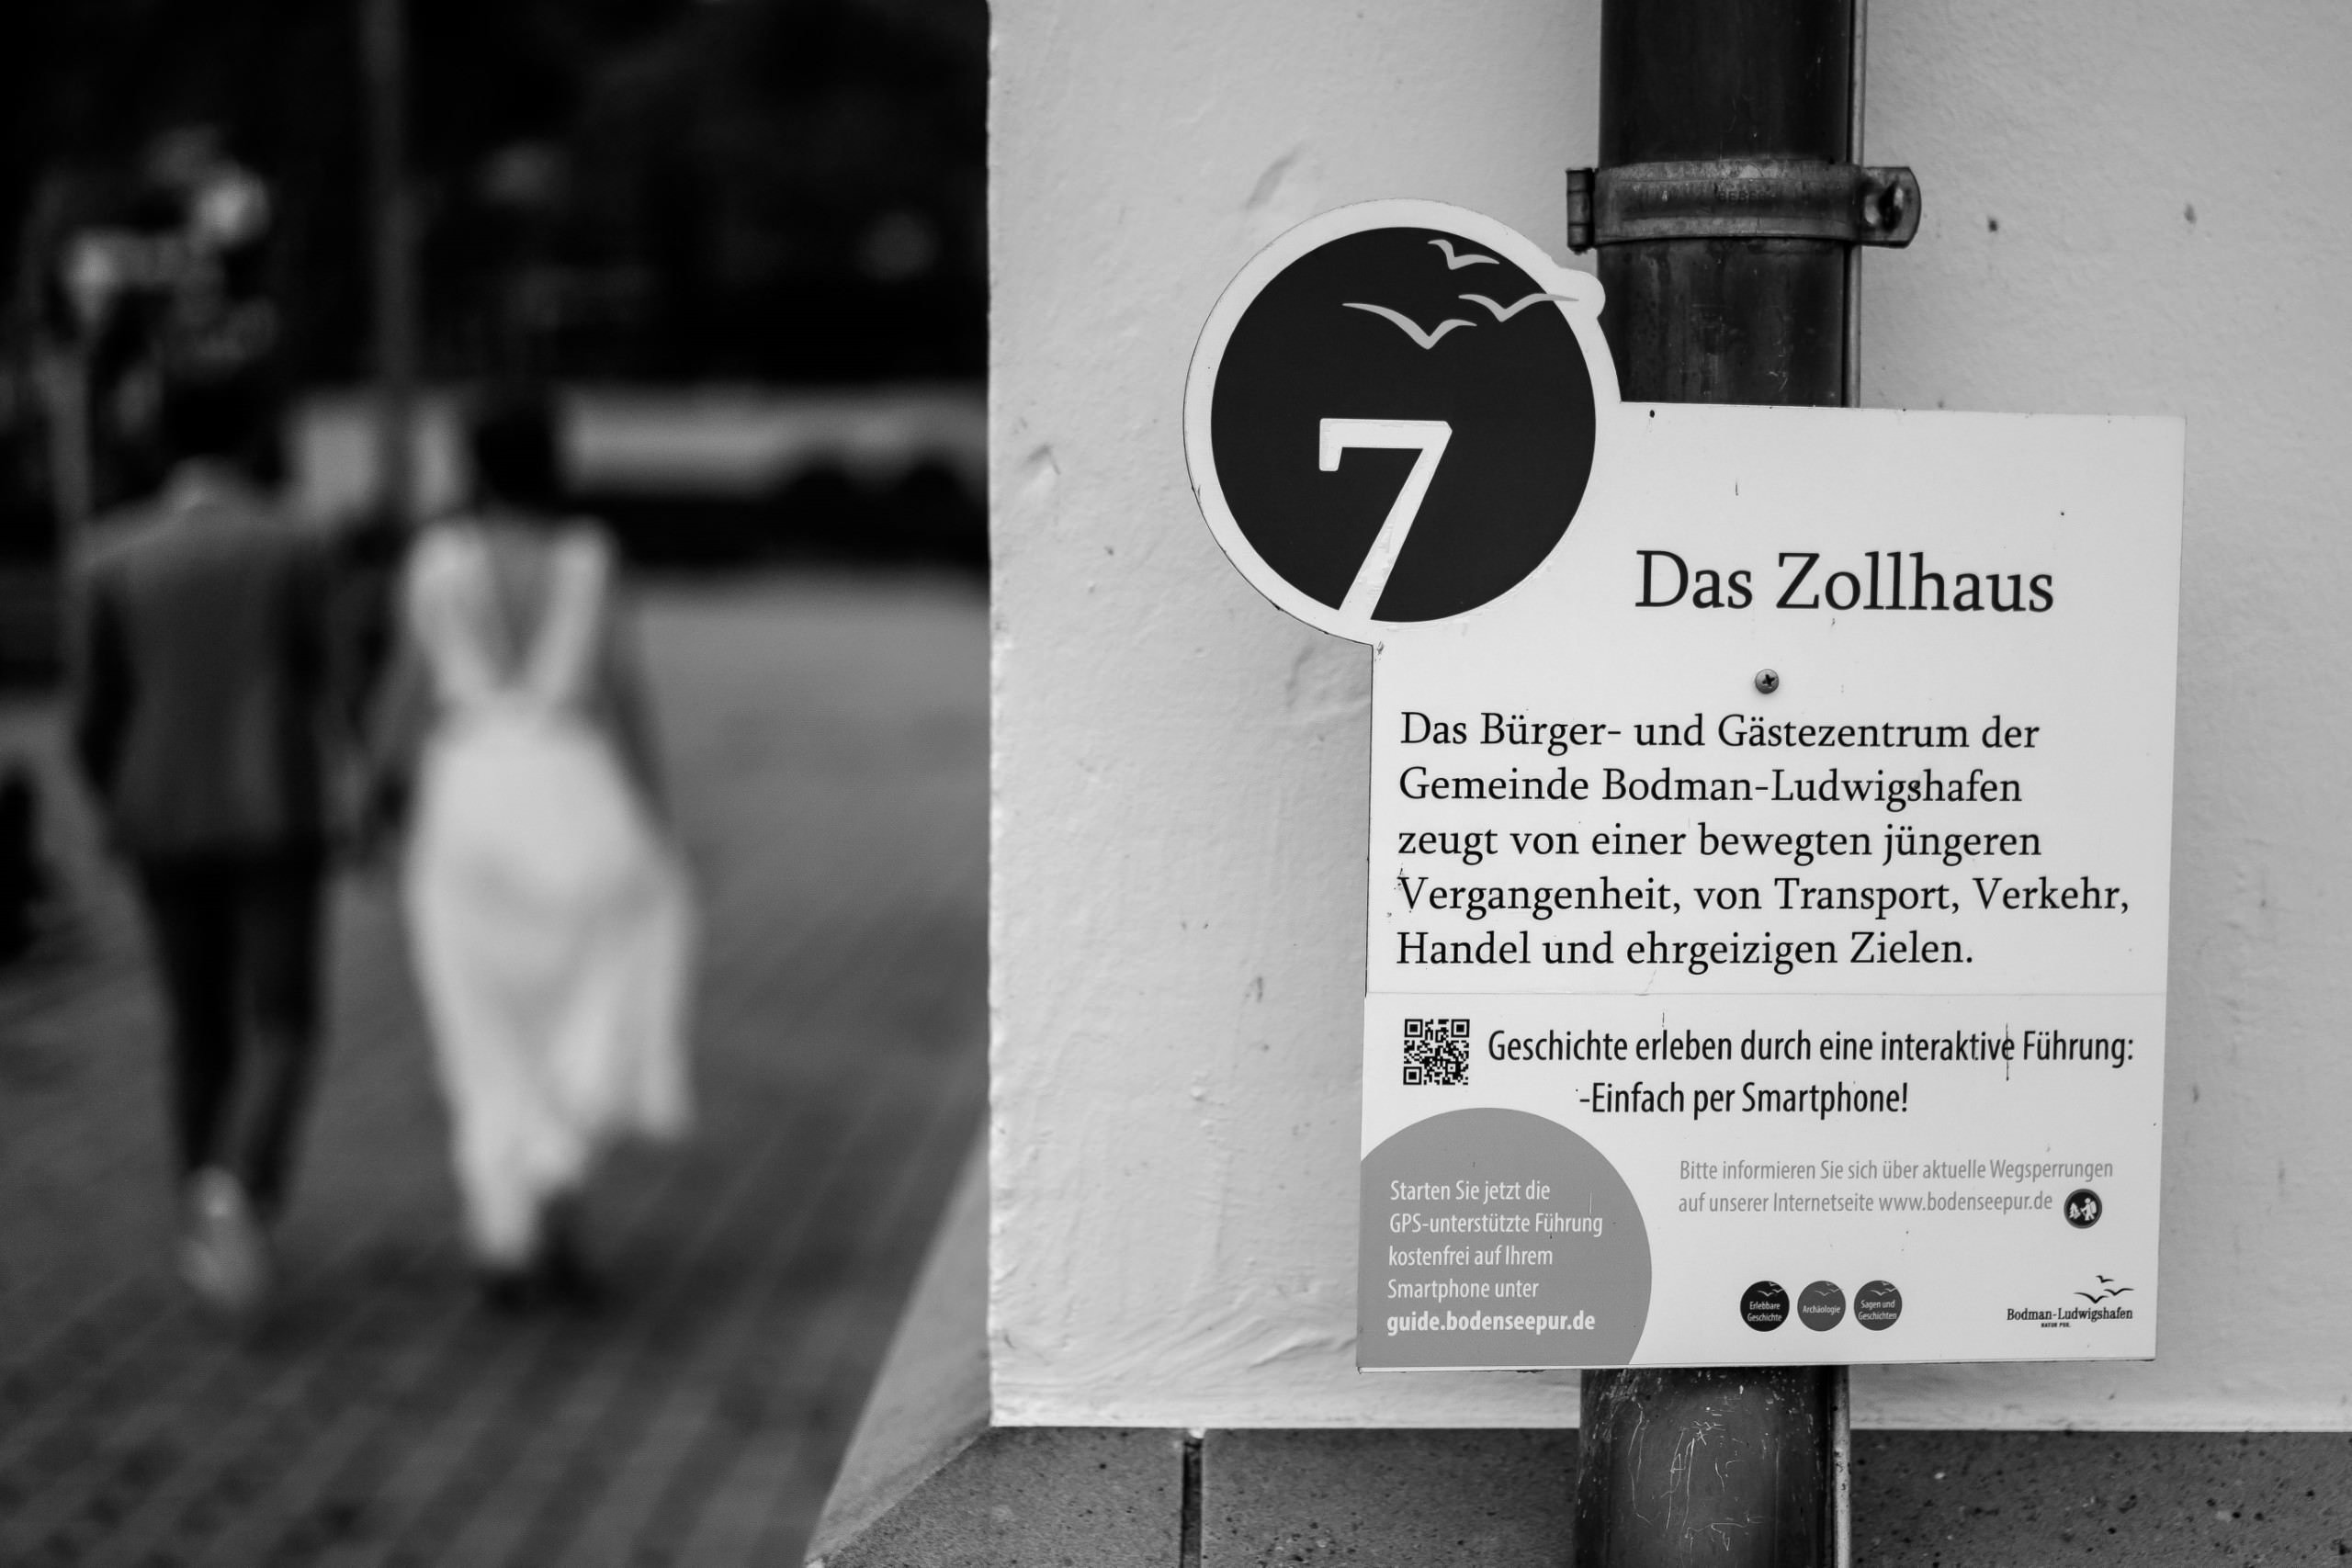 Aida + Tim | Hochzeitsfotografen am Bodensee Zollhaus - Hochzeit in Deutschland  - Hochzeitsfotografie von Aida und Tim